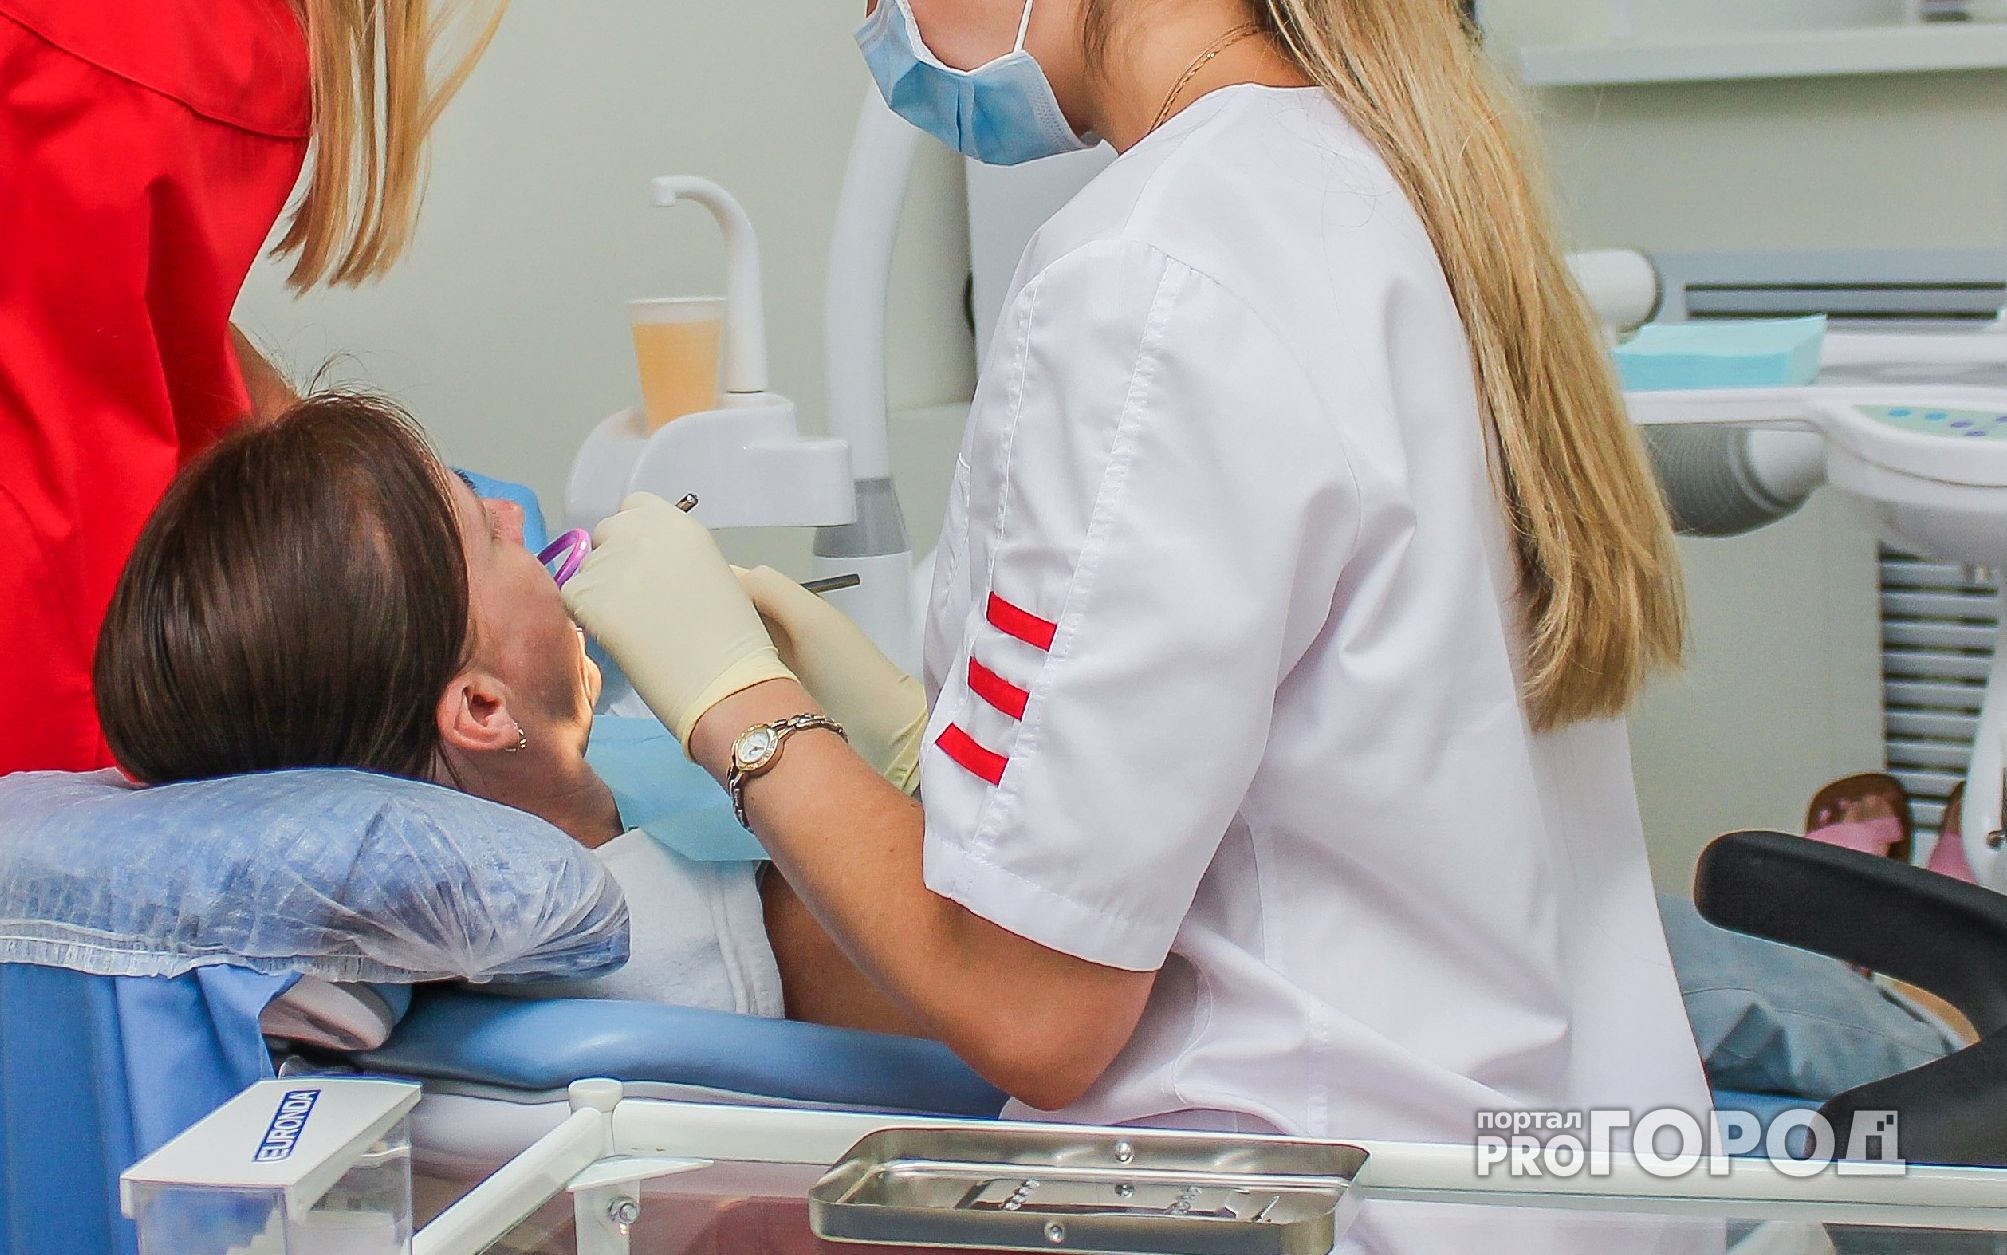 В Чебоксарах объявили большие скидки на чистку зубов и лечение кариеса